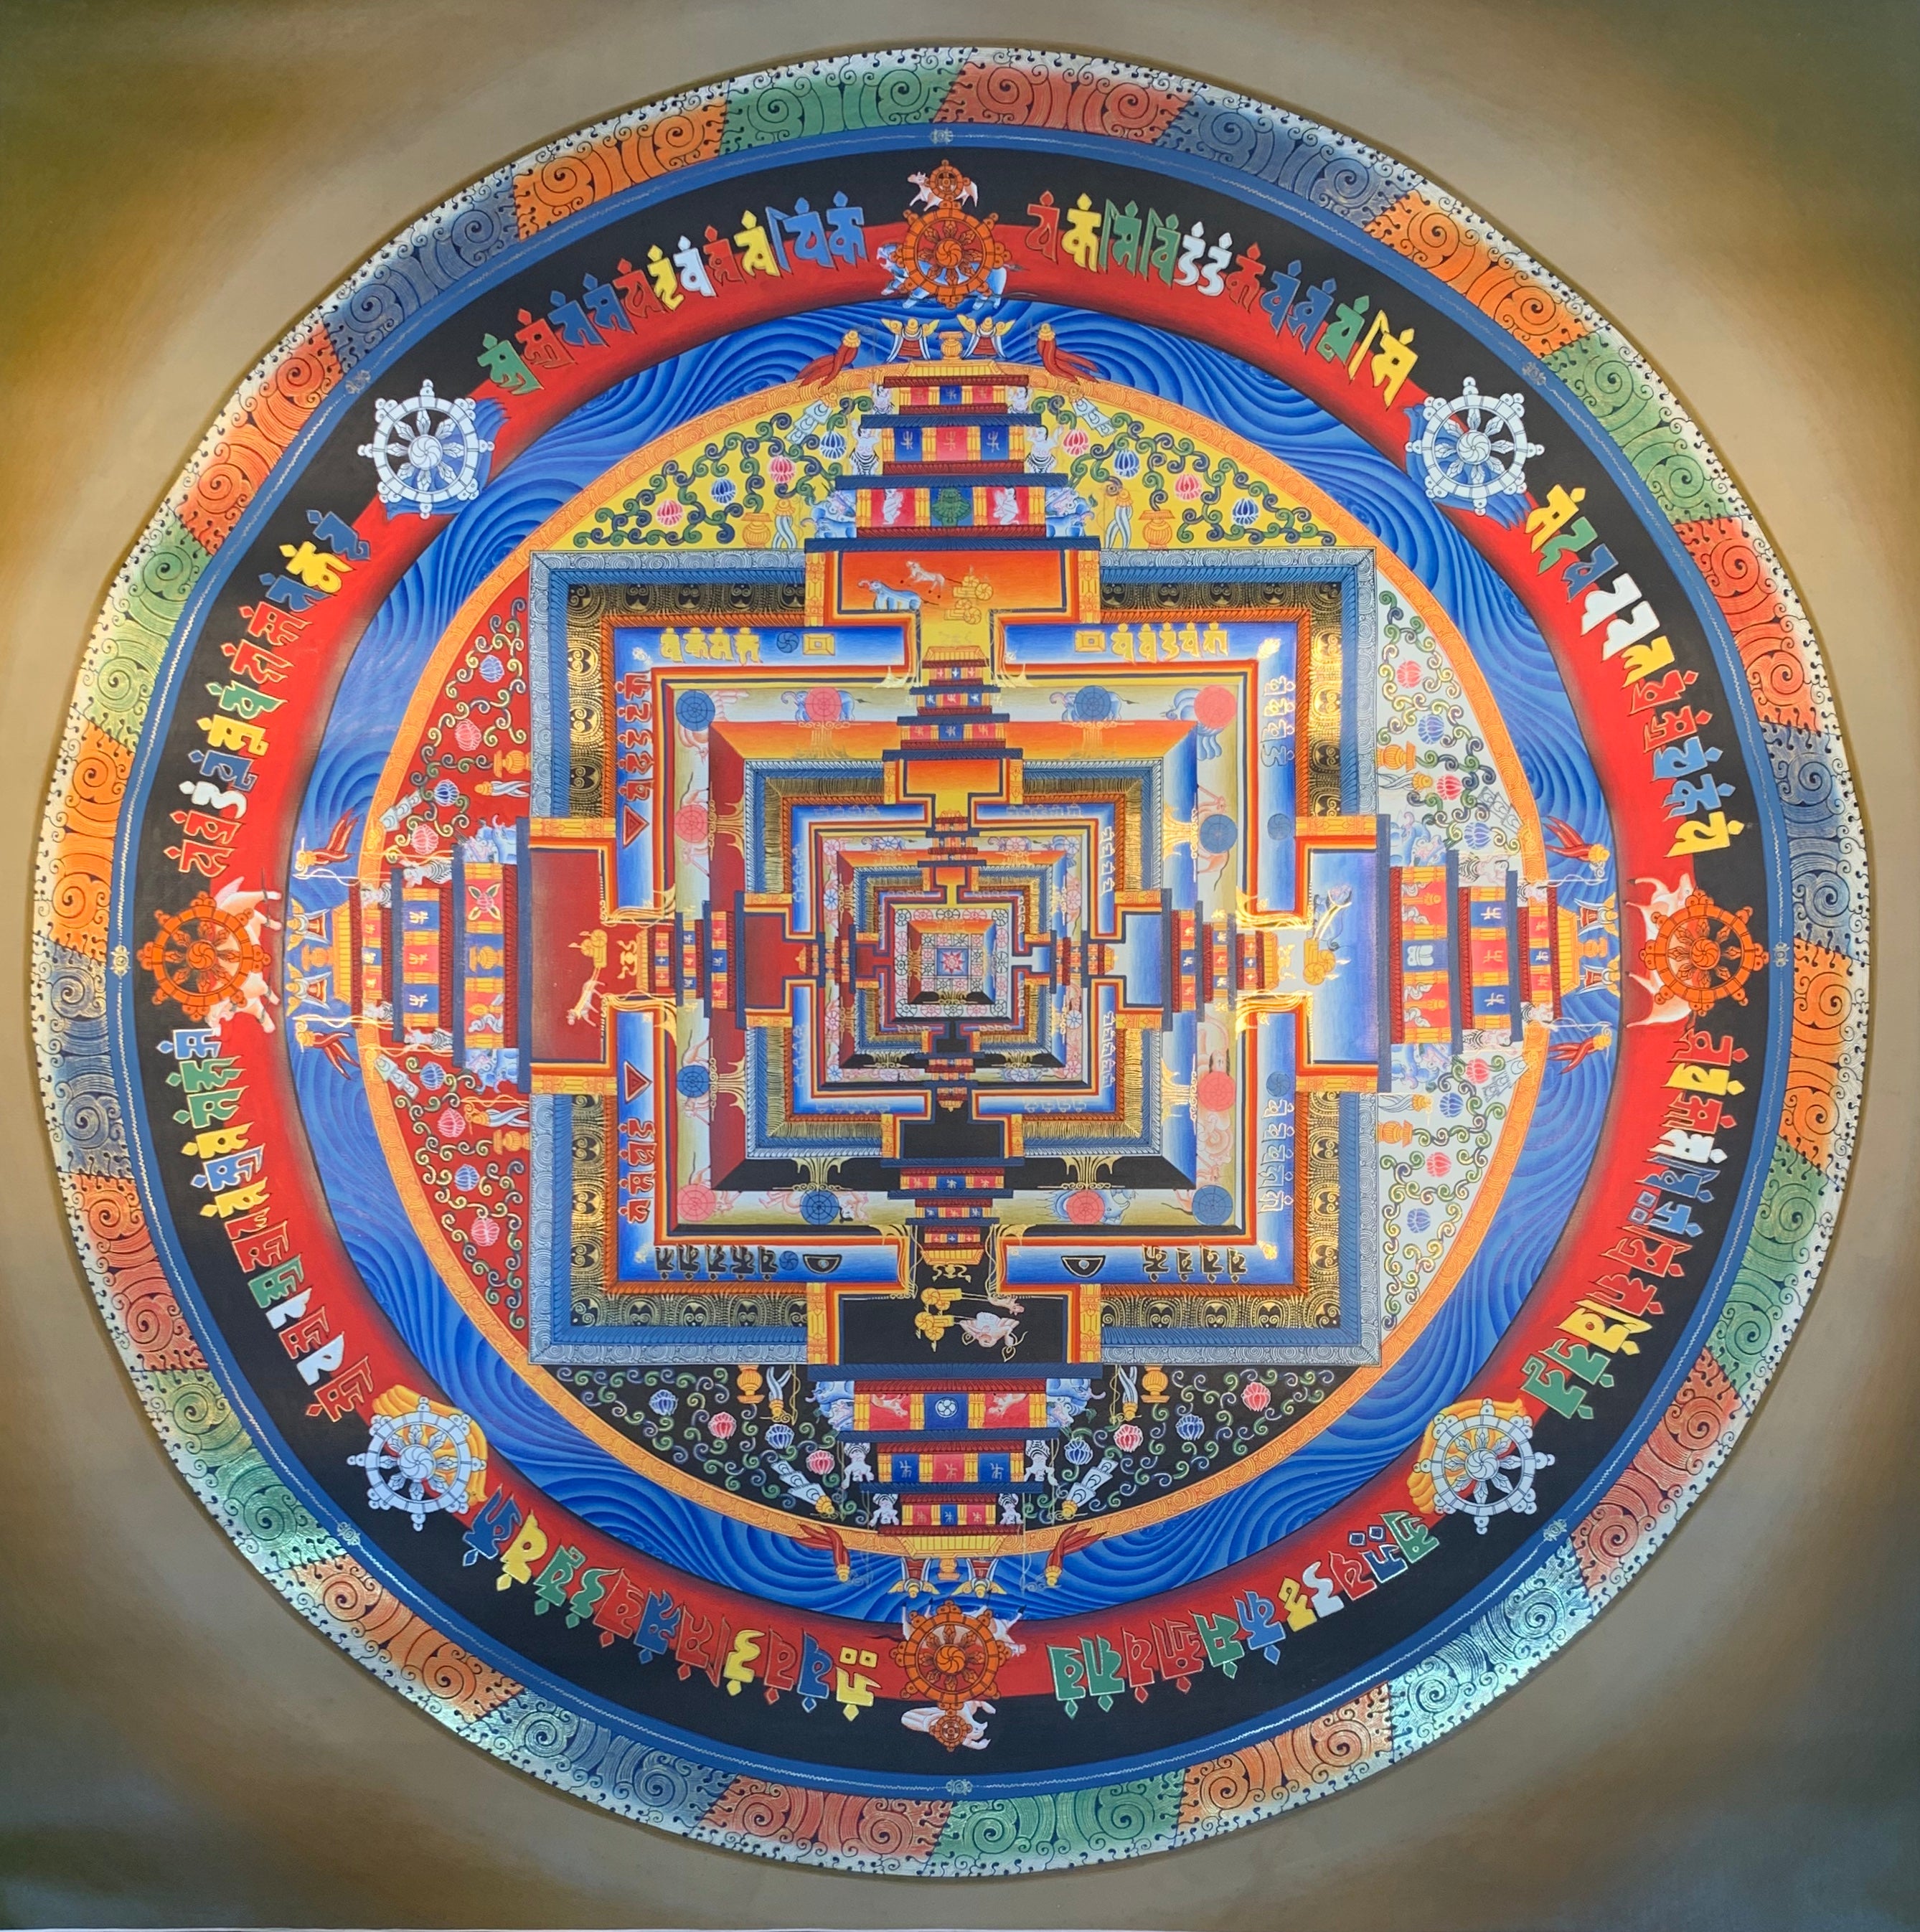 Kalachakra Mandala Thangka Painting 60*60 - The Thangka